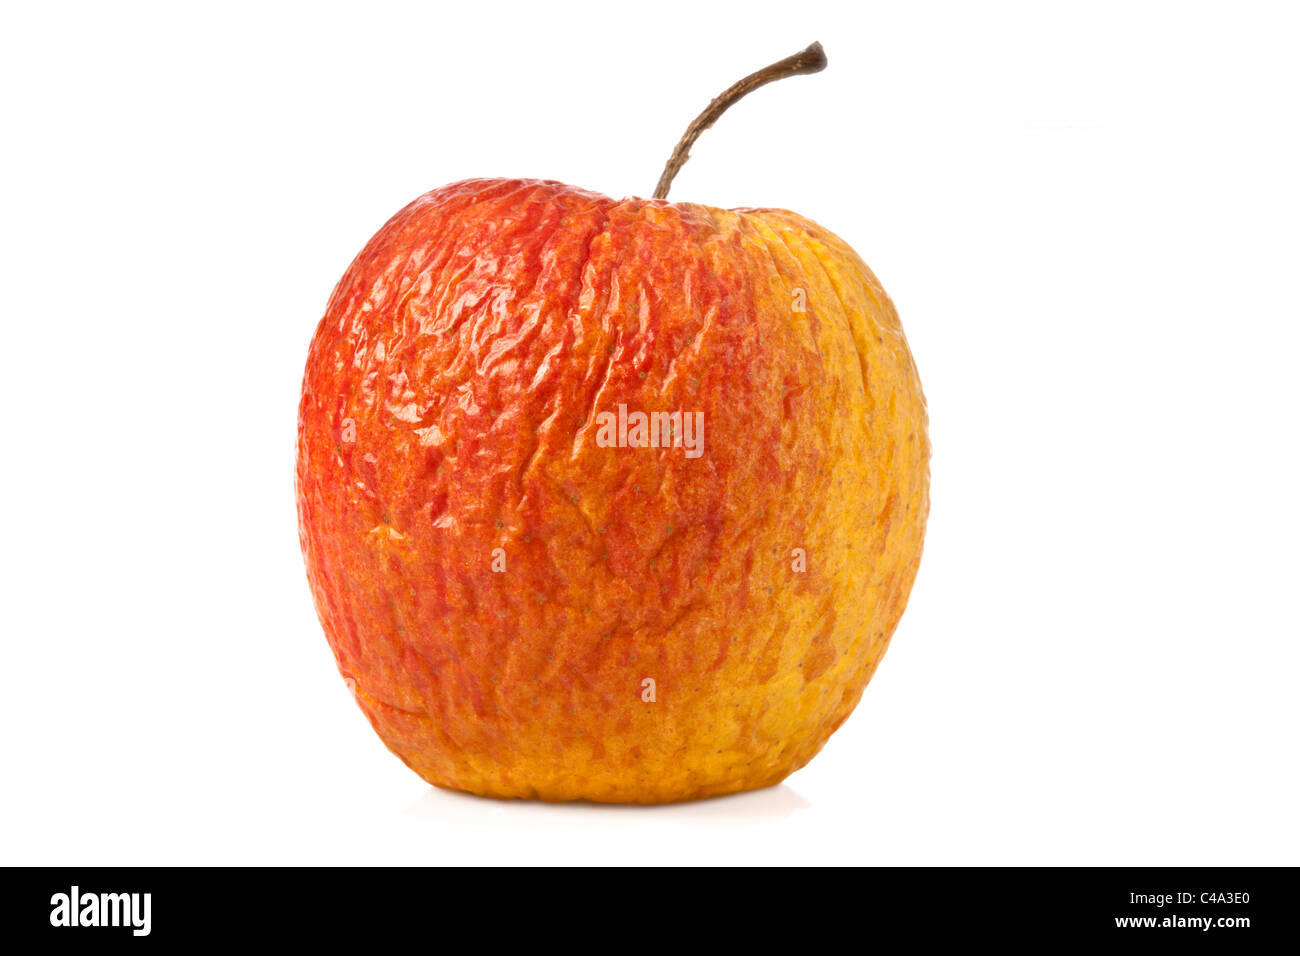 Getrocknete Apfel auf weißem Hintergrund - Apfel, vertrocknet Stockfoto